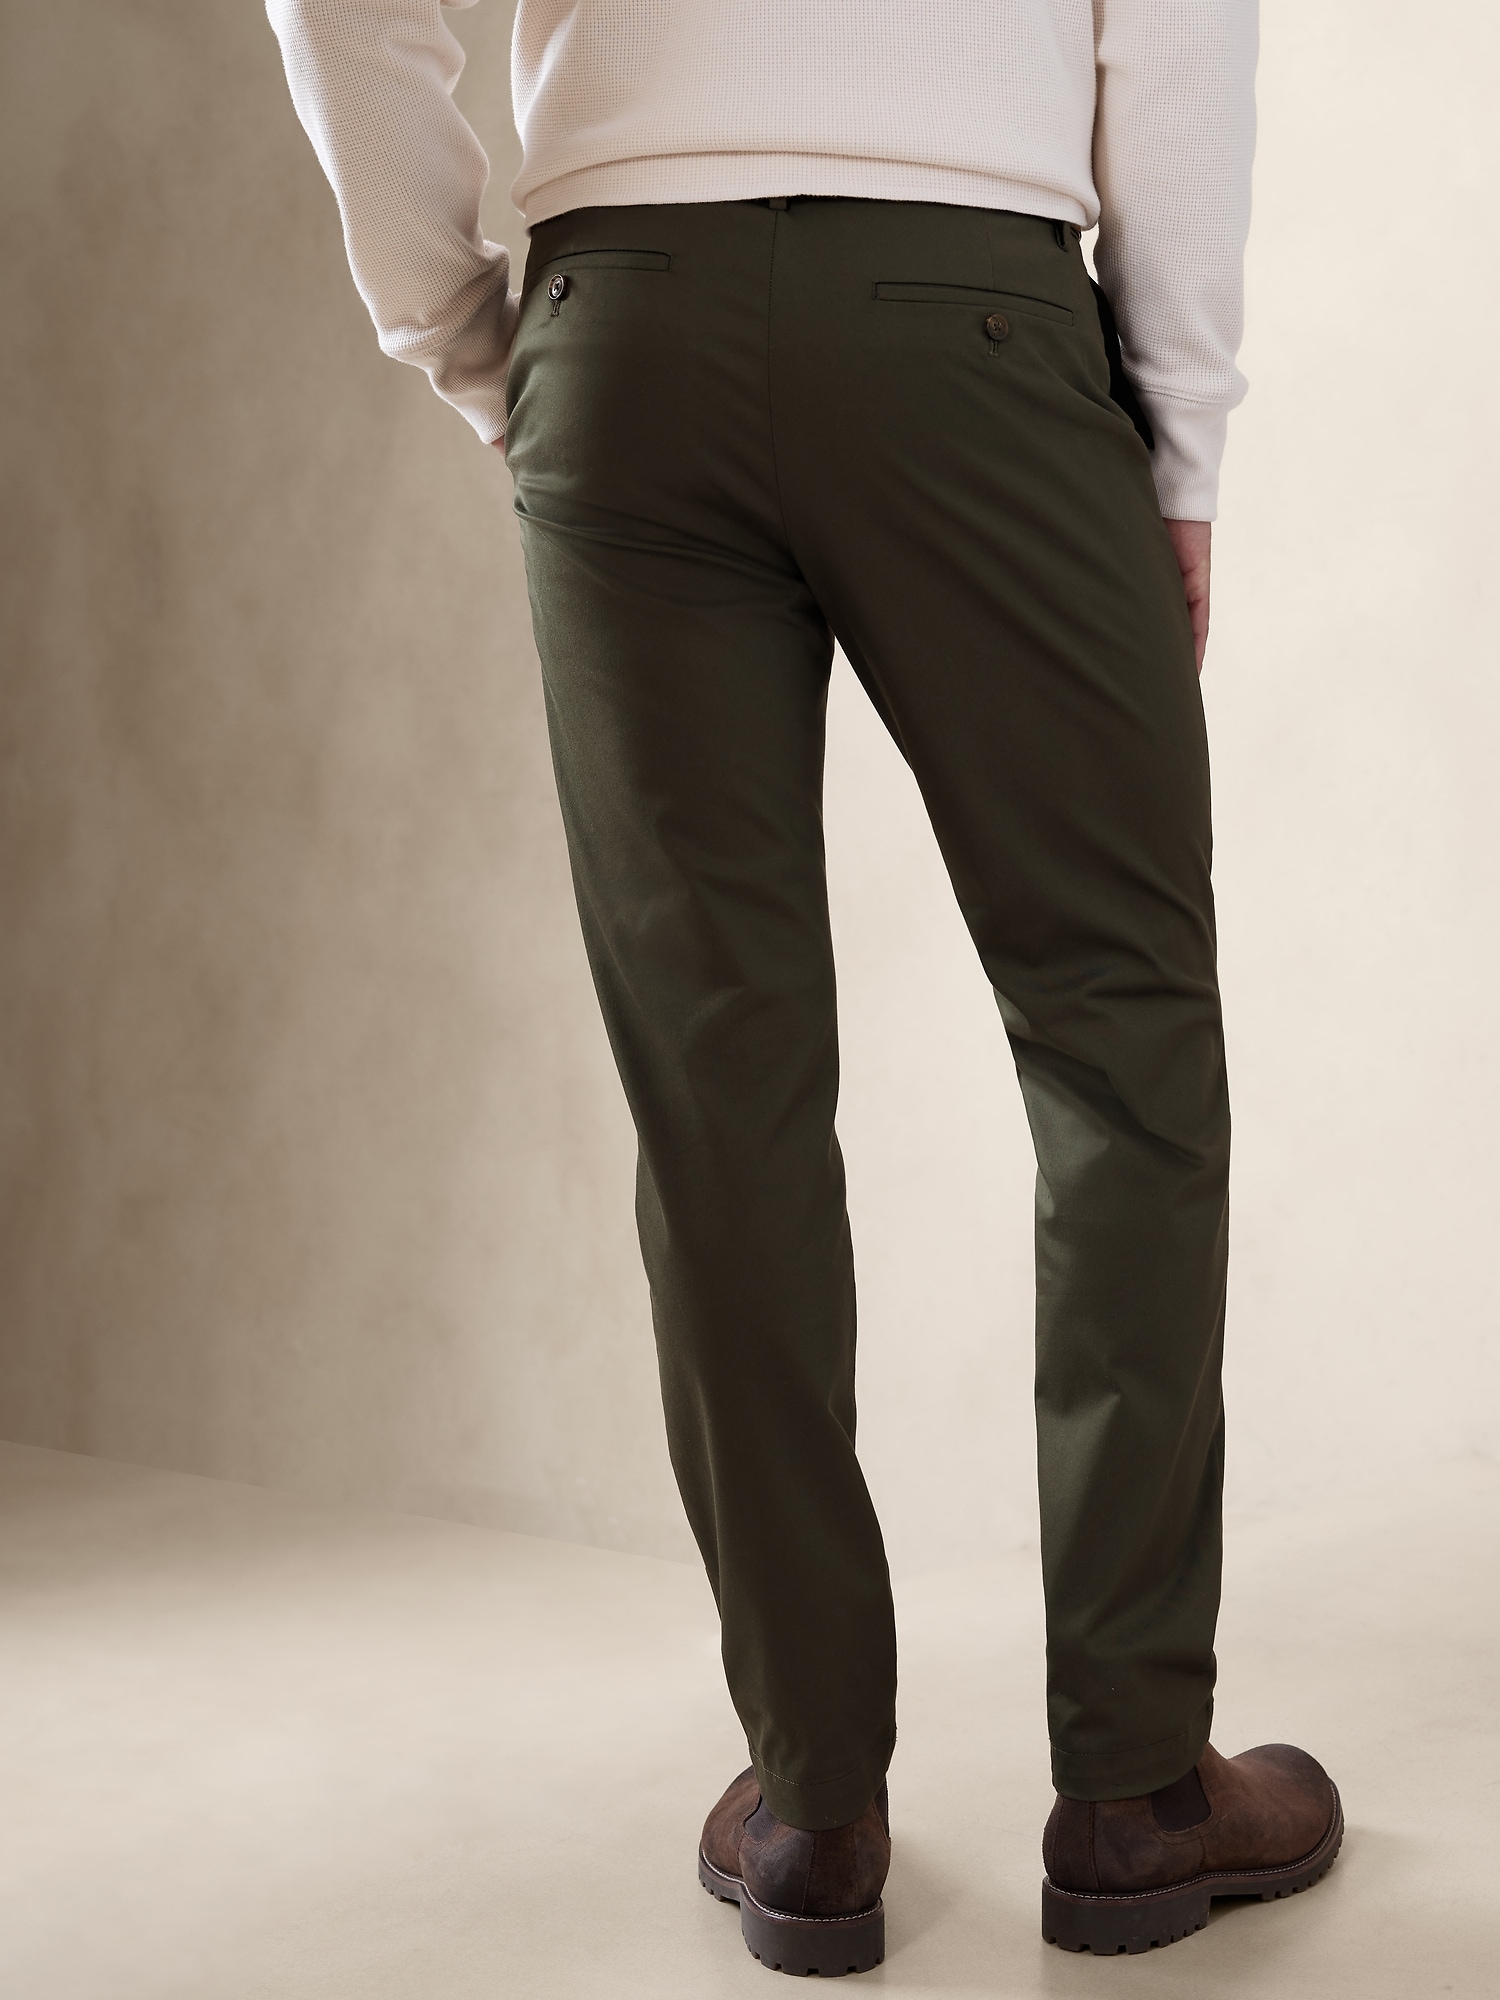 Slim Fit Twill Pants - Dark green - Men | H&M US